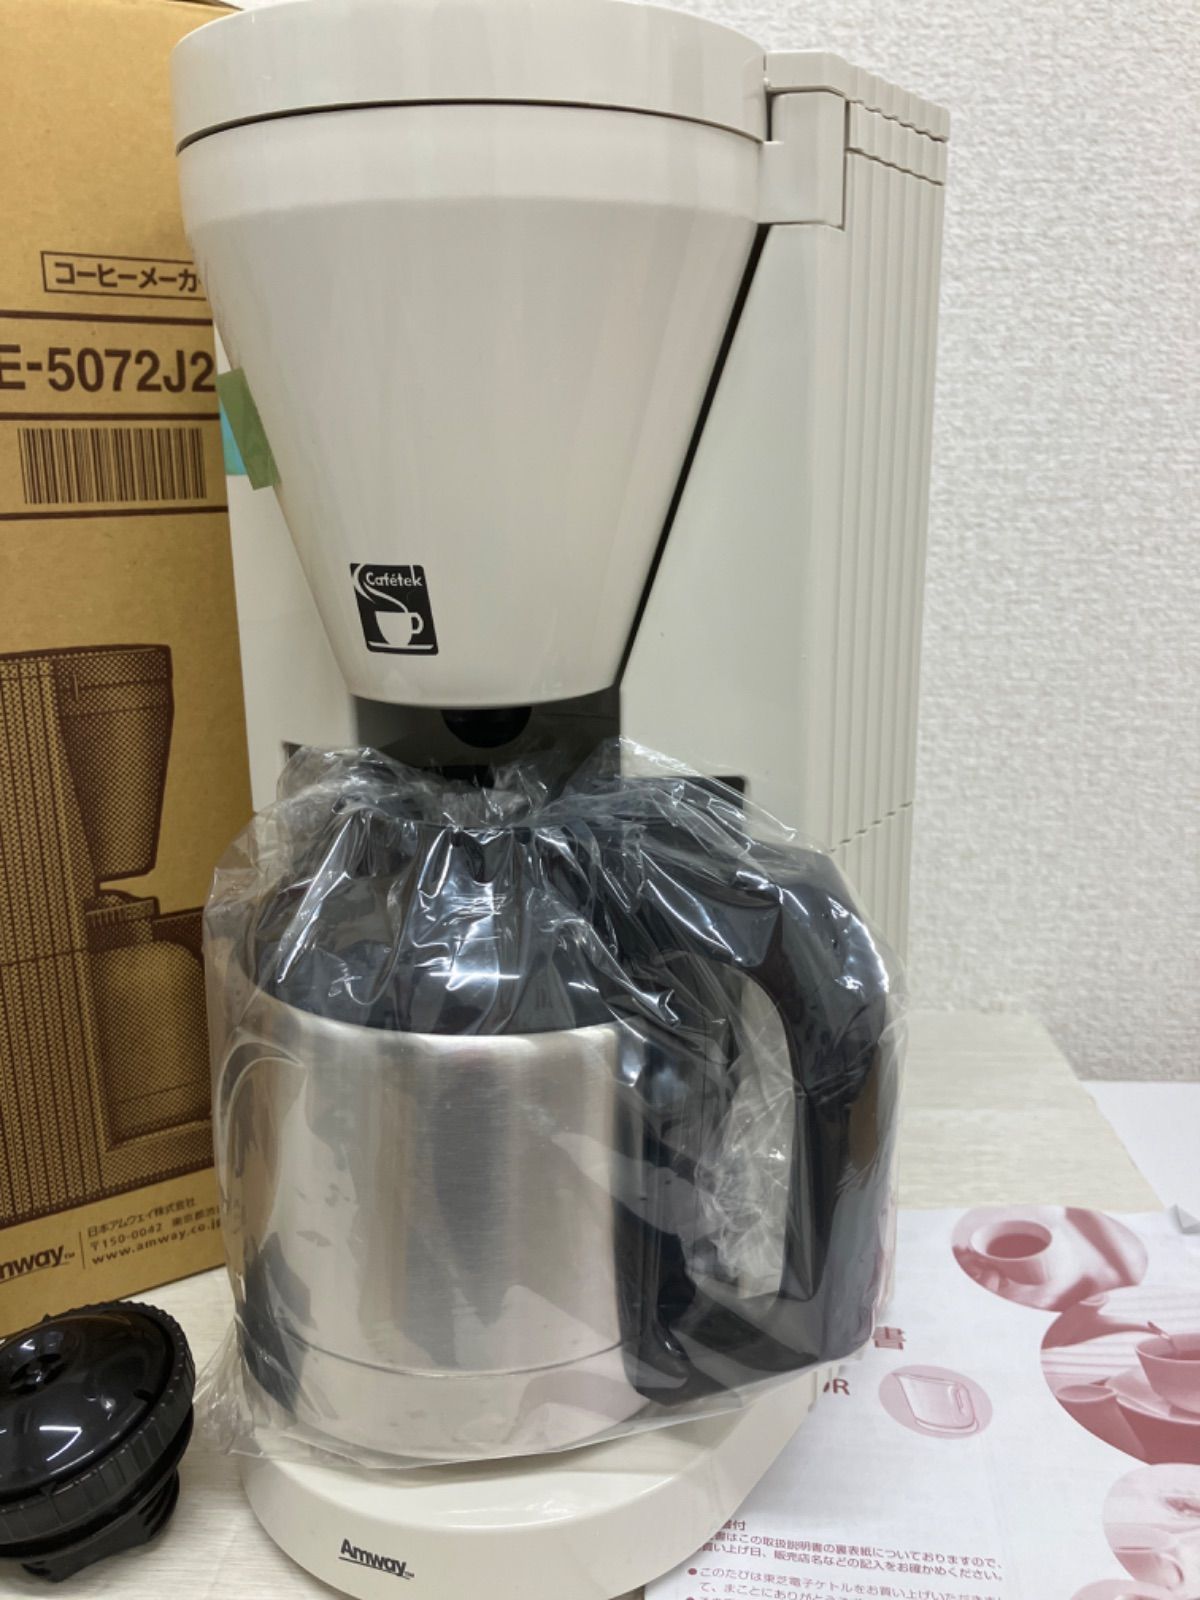 未使用】Amway E-5072J2 カフェテック コーヒーメーカー - メルカリ